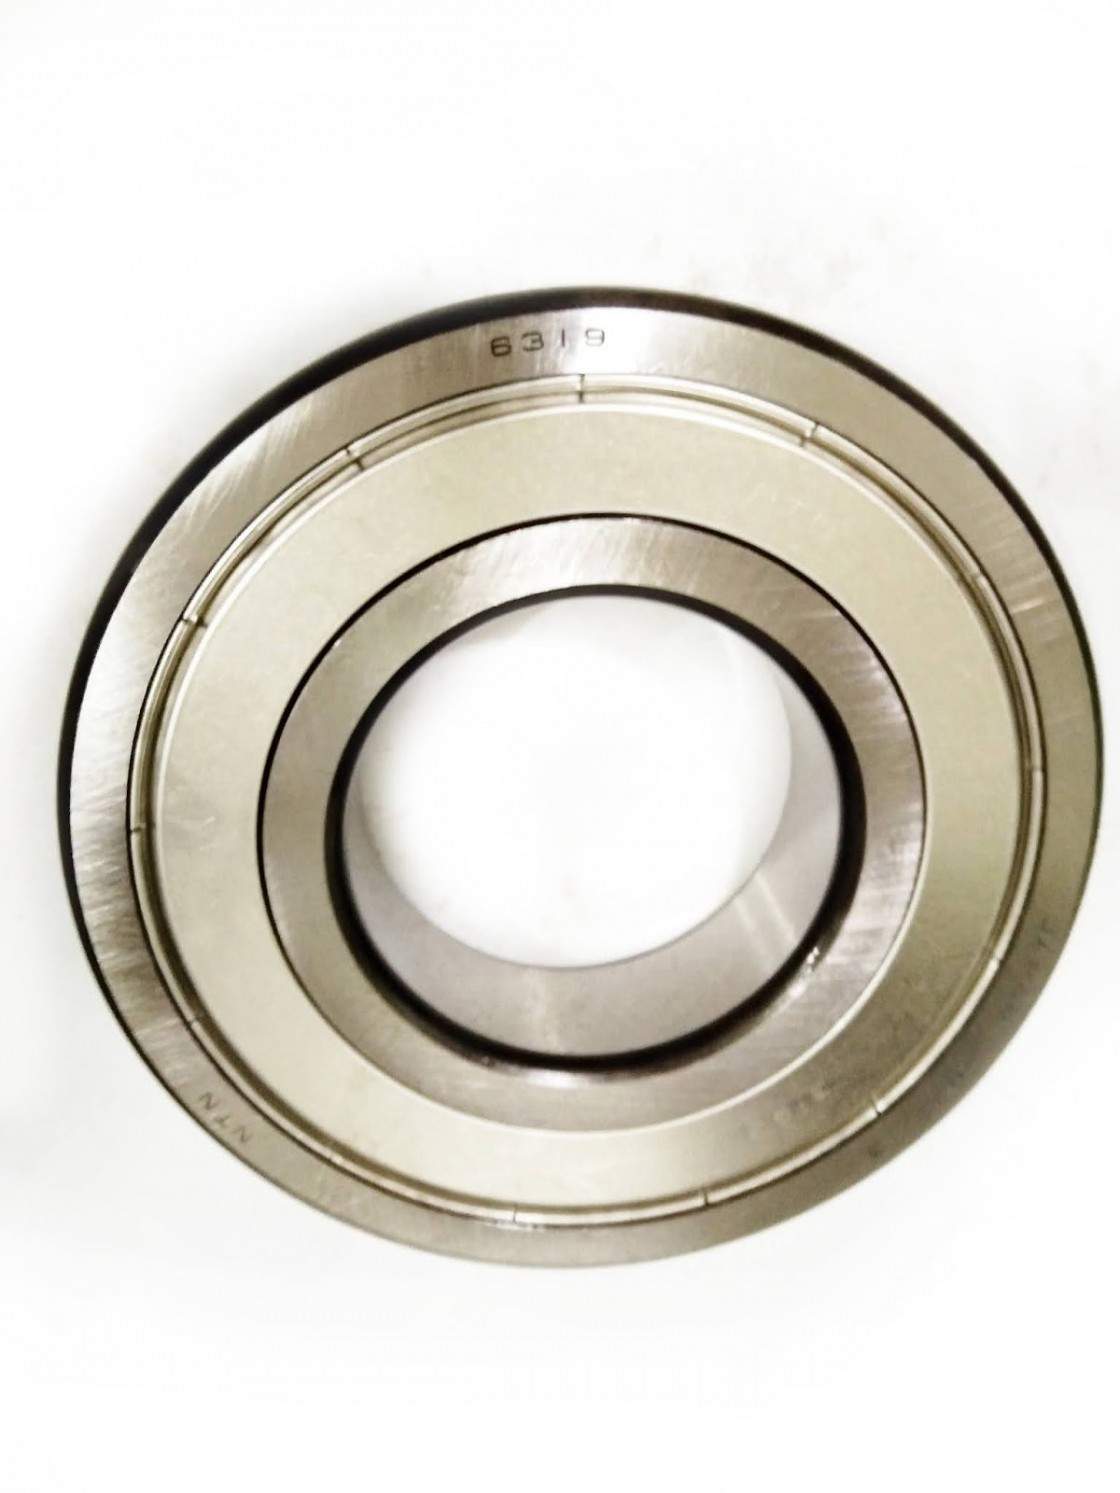 Chrome bearings 6202 6204 6203 ZZ RS 2RS Z DDU steel cage NSK 6203dull 6205 Japan bearing